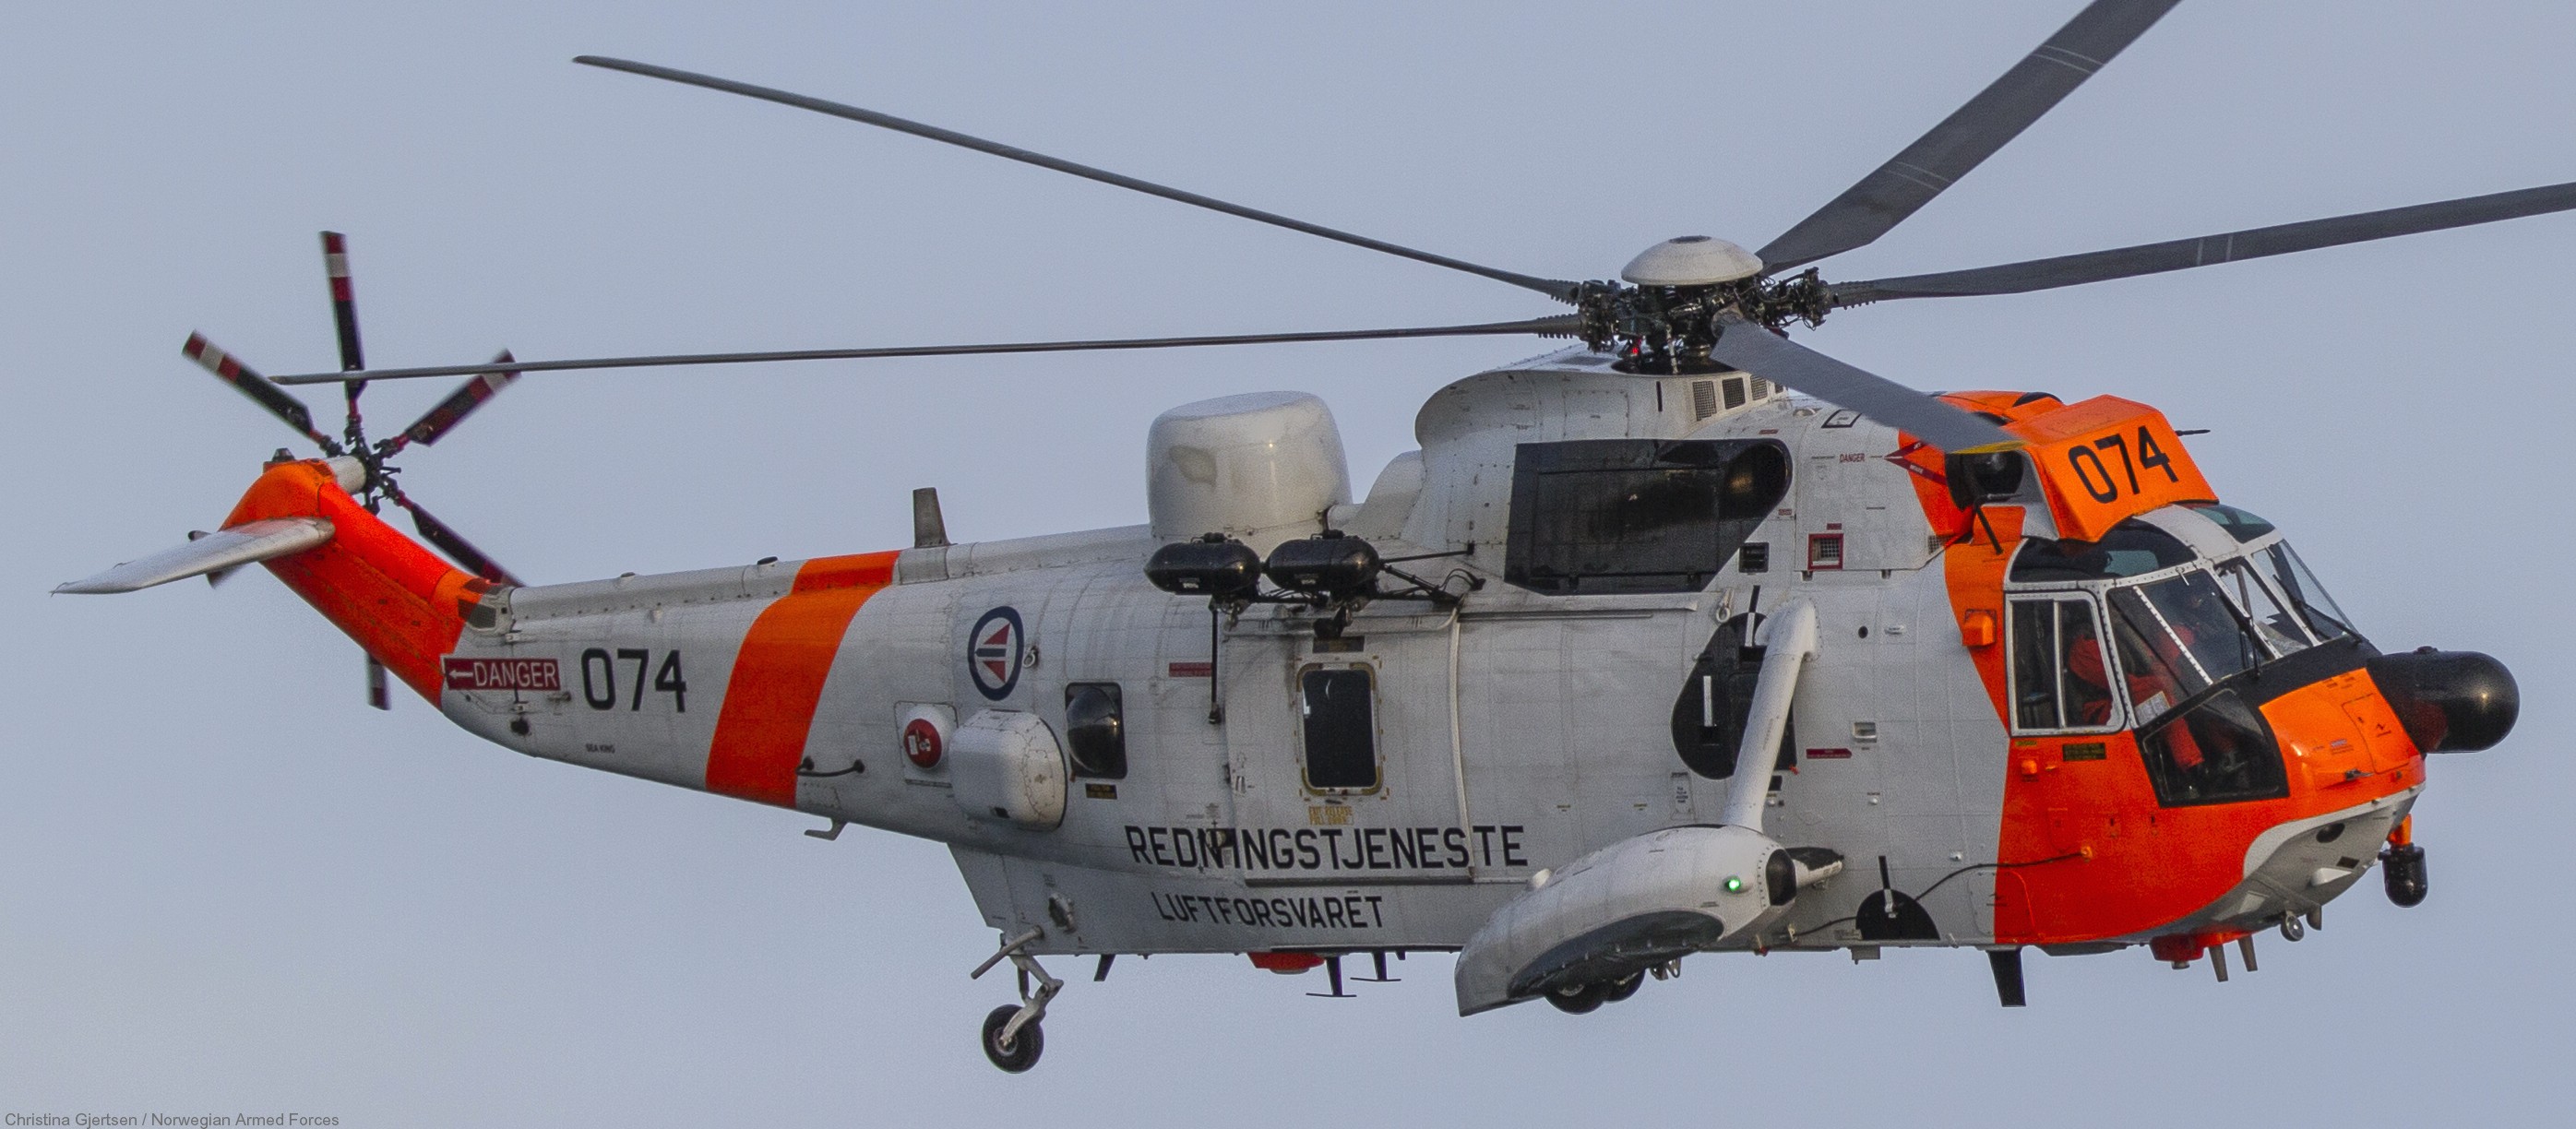 westland ws-61 sea king royal norwegian air force sar rescue 330 squadron skvadron luftforsvaret 074 02